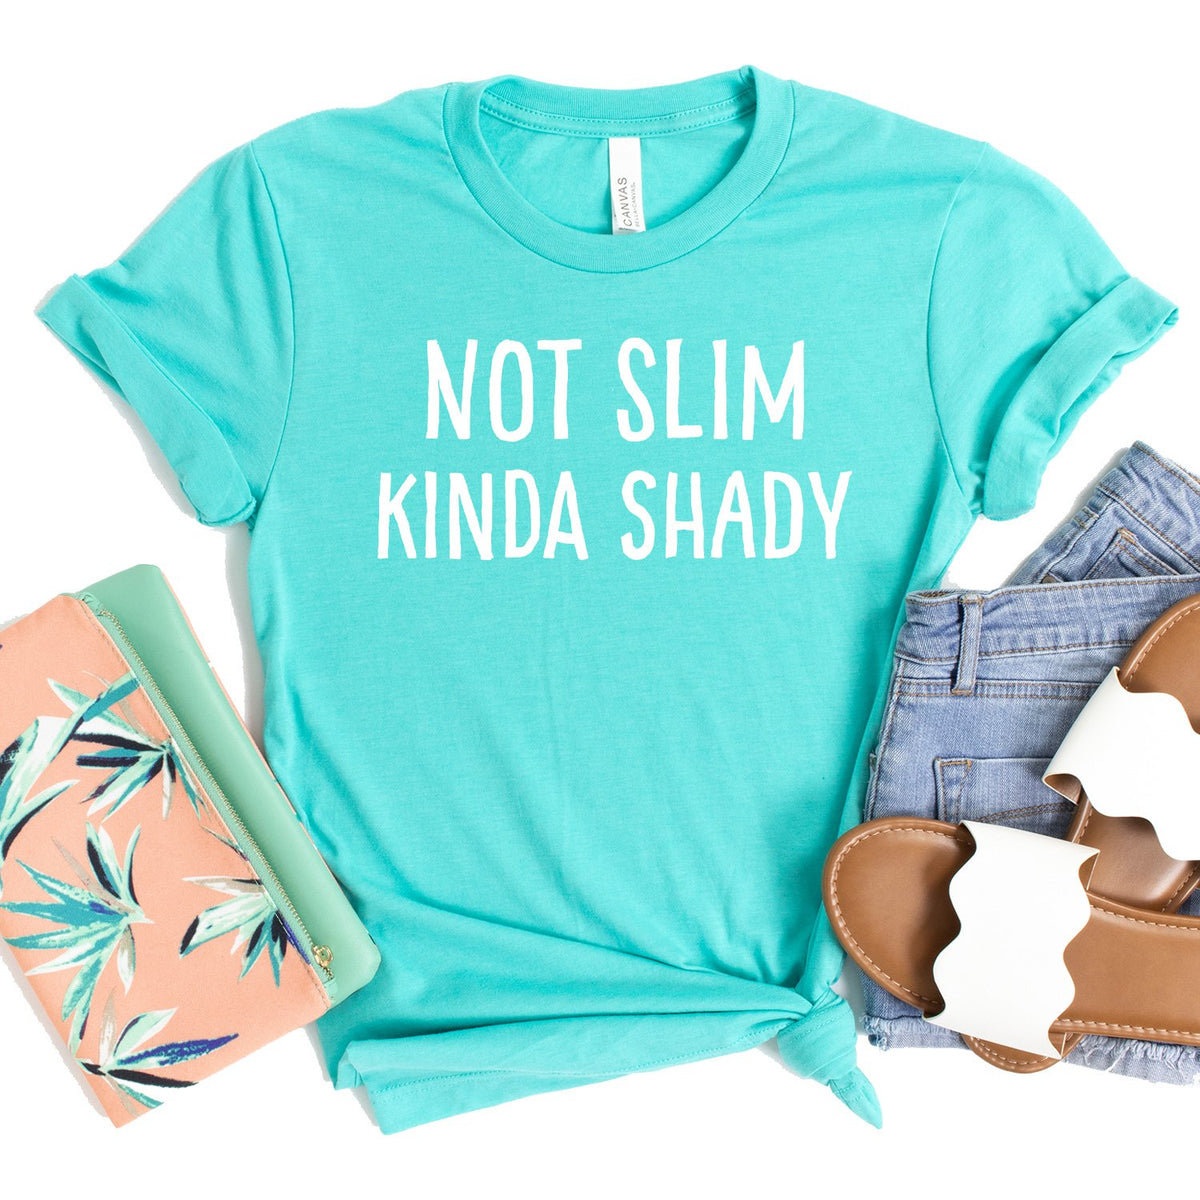 Not Slim Kinda Shady - Short Sleeve Tee Shirt